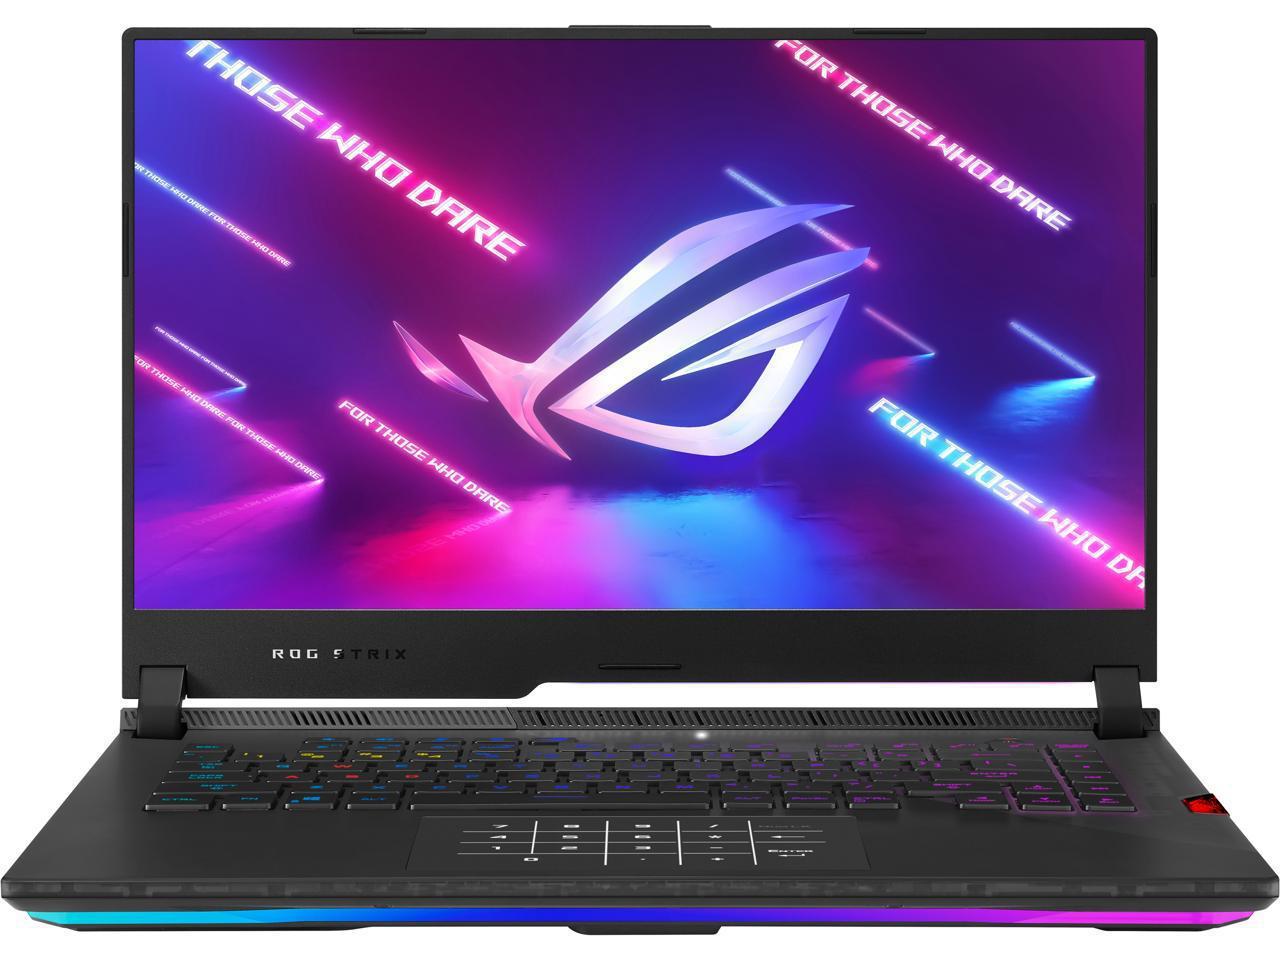 Asus Rog Strix Scar 15 (2021) Gaming Laptop, 15.6" 300Hz Ips Type Fhd, Nvidia Geforce Rtx 3080,